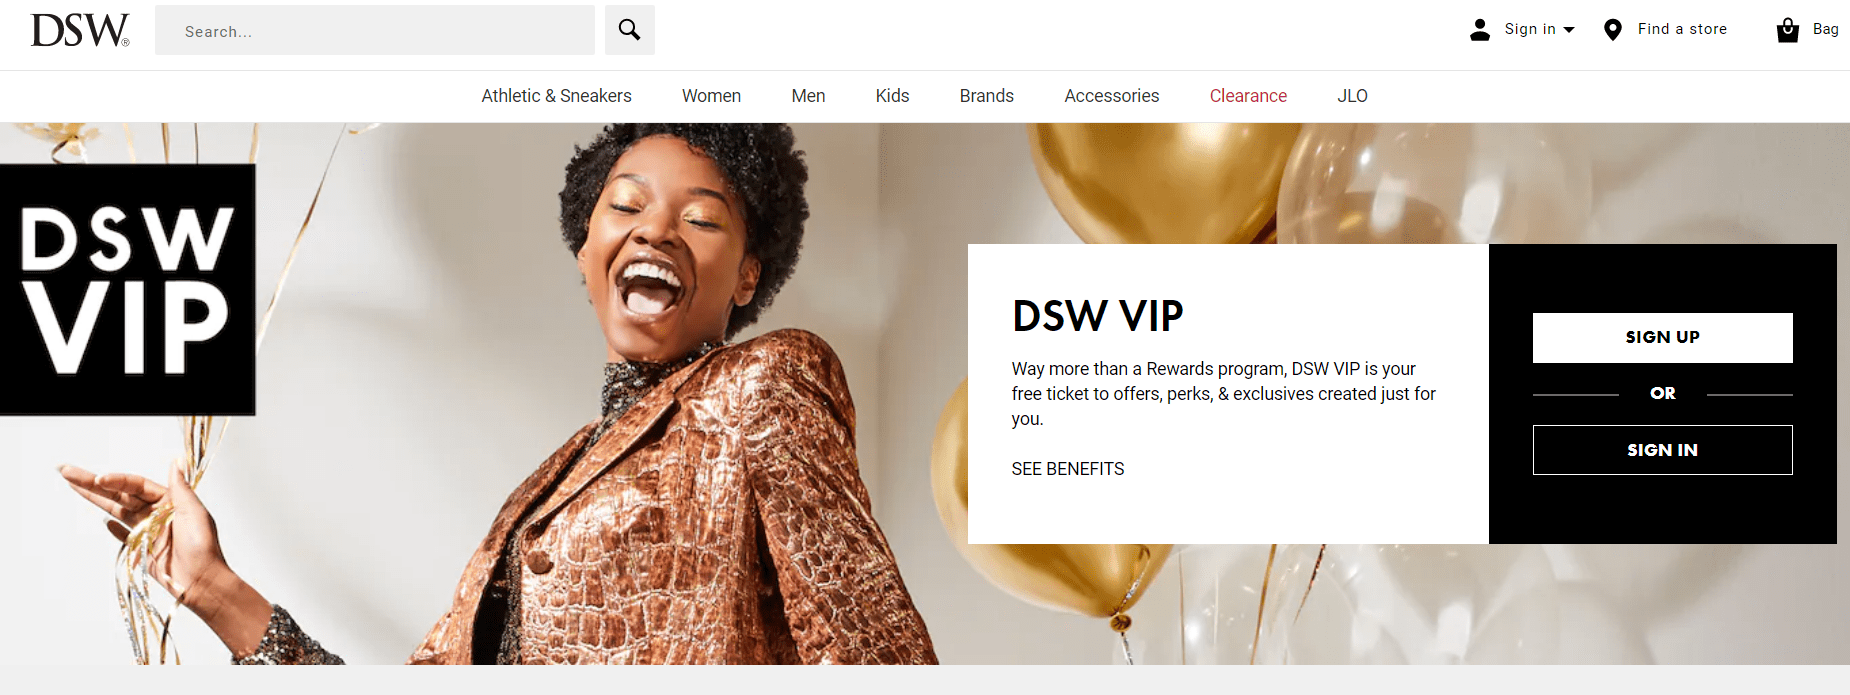 rewards page DSW VIP